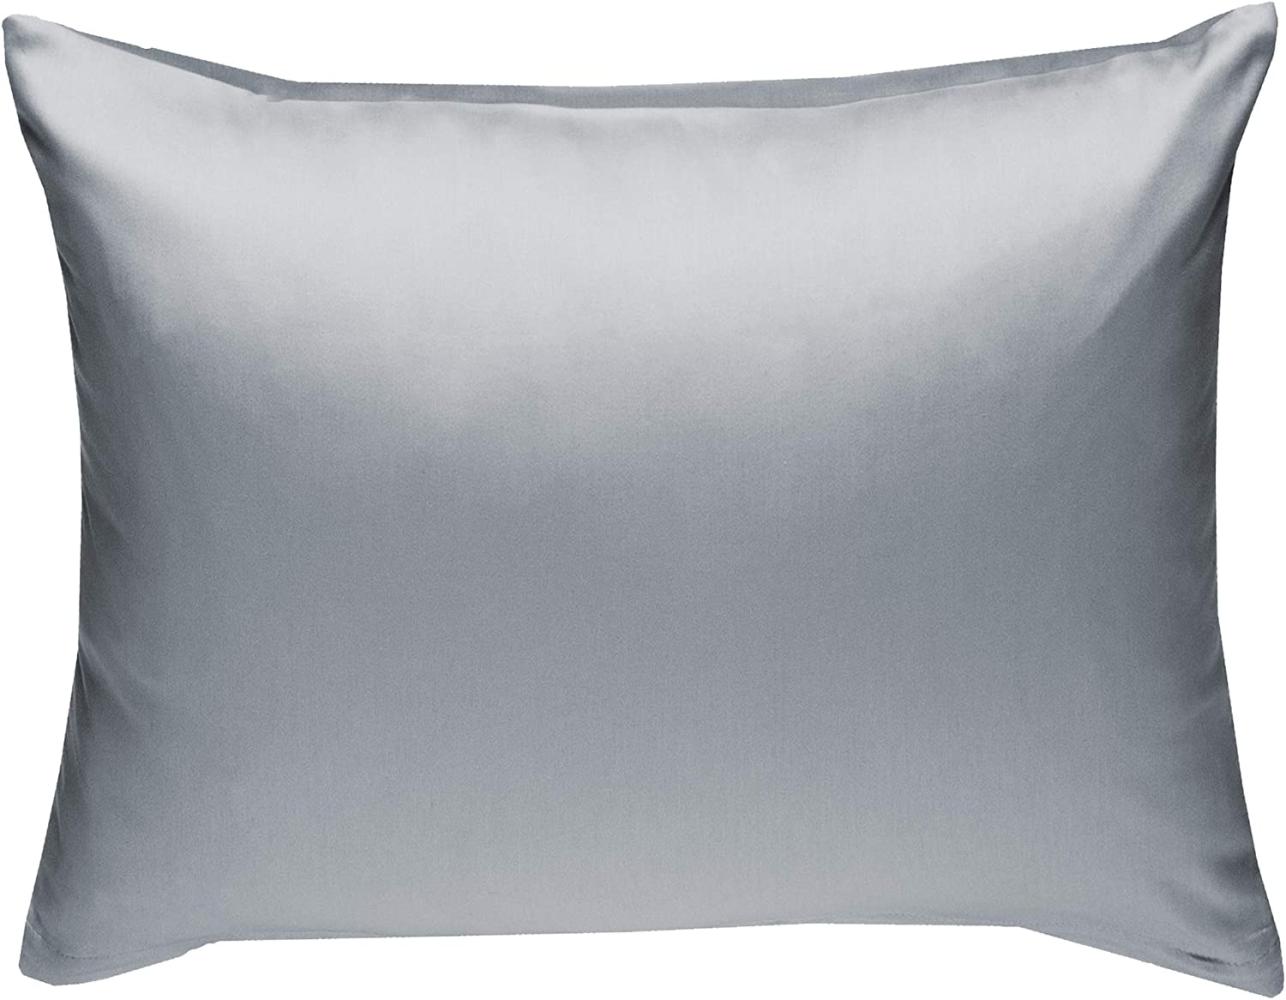 Bettwaesche-mit-Stil Mako-Satin / Baumwollsatin Bettwäsche uni / einfarbig grau Kissenbezug 70x90 cm Bild 1